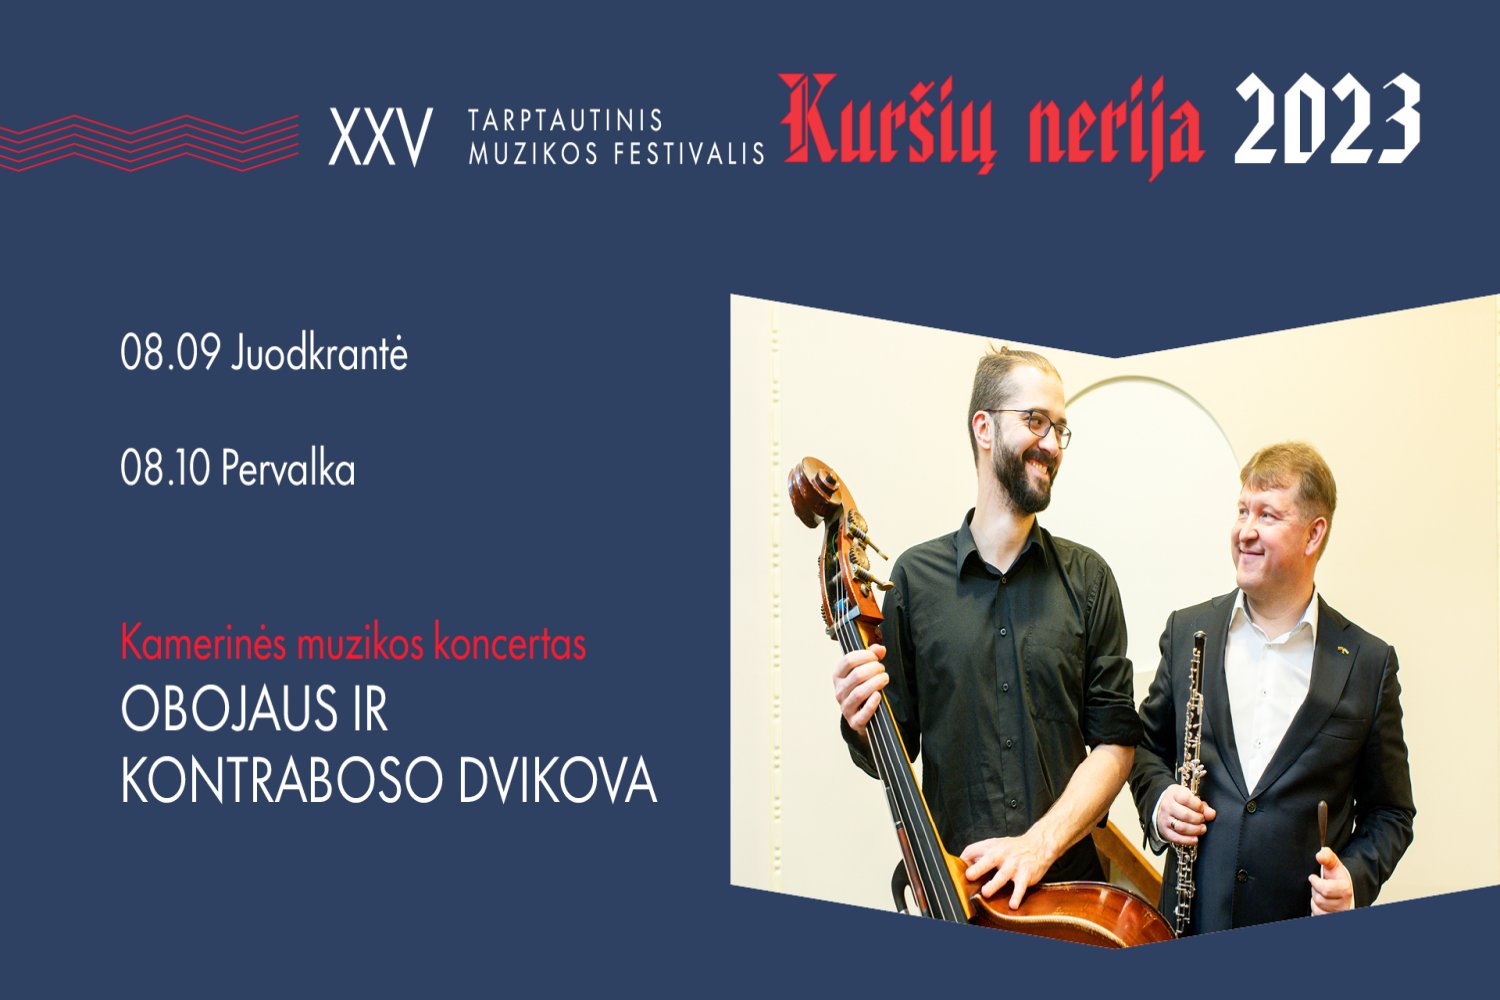 Festivalis Kuršių nerija: kamerinės muzikos koncertas Obojaus ir kontraboso dvikova